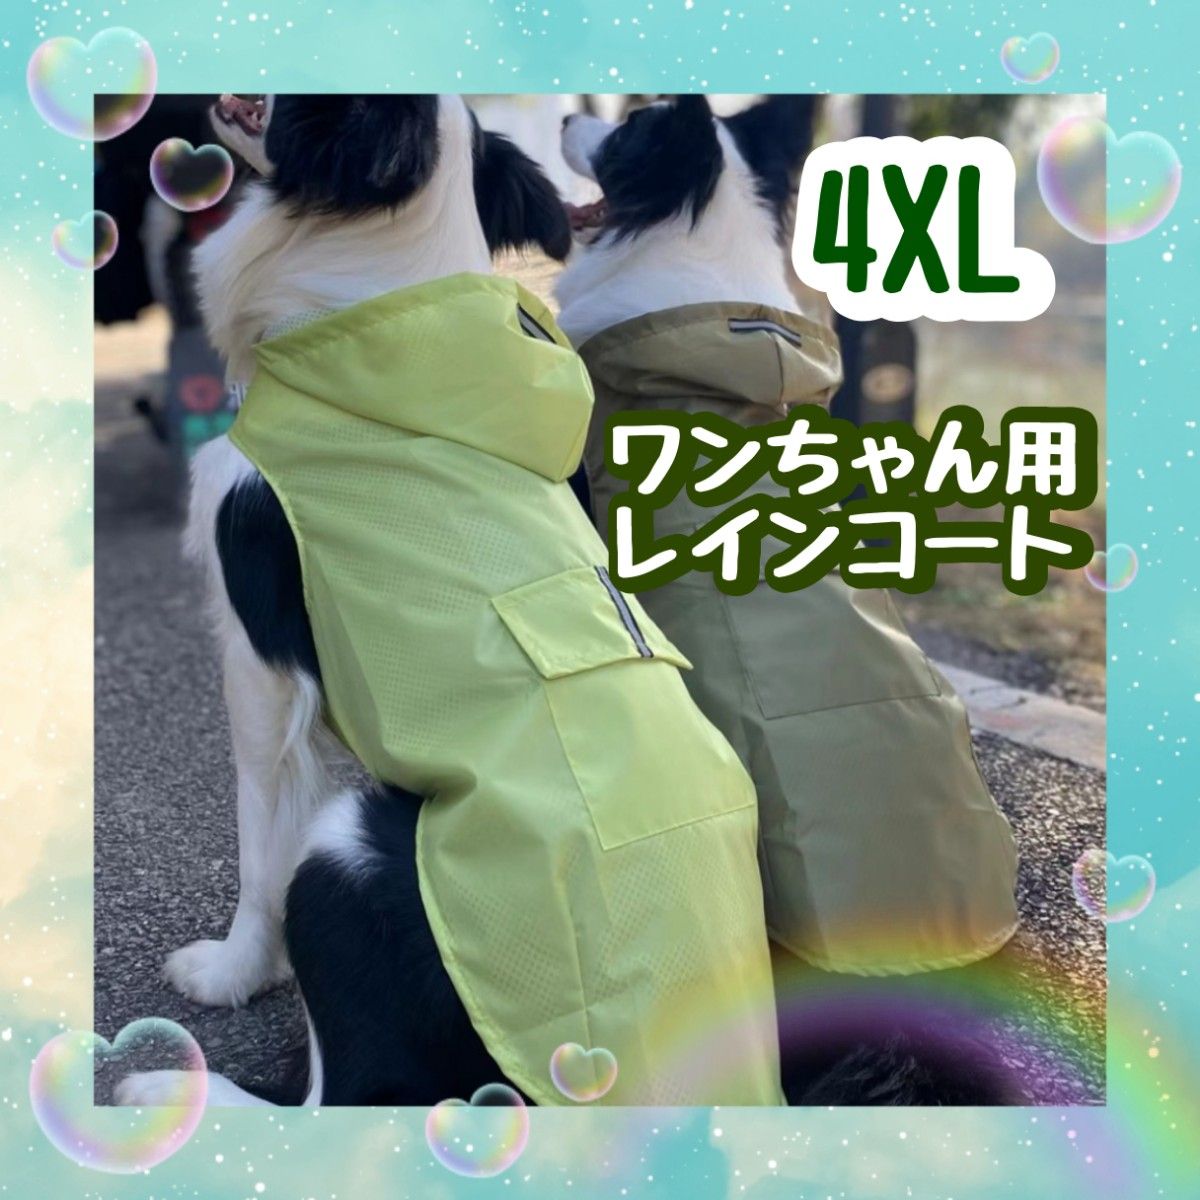 4XL 黄緑色 グリーン ドックレインコート レインウェア カッパ 大型犬 ワンちゃん用 携帯 軽量 梅雨 雨の日 お散歩 